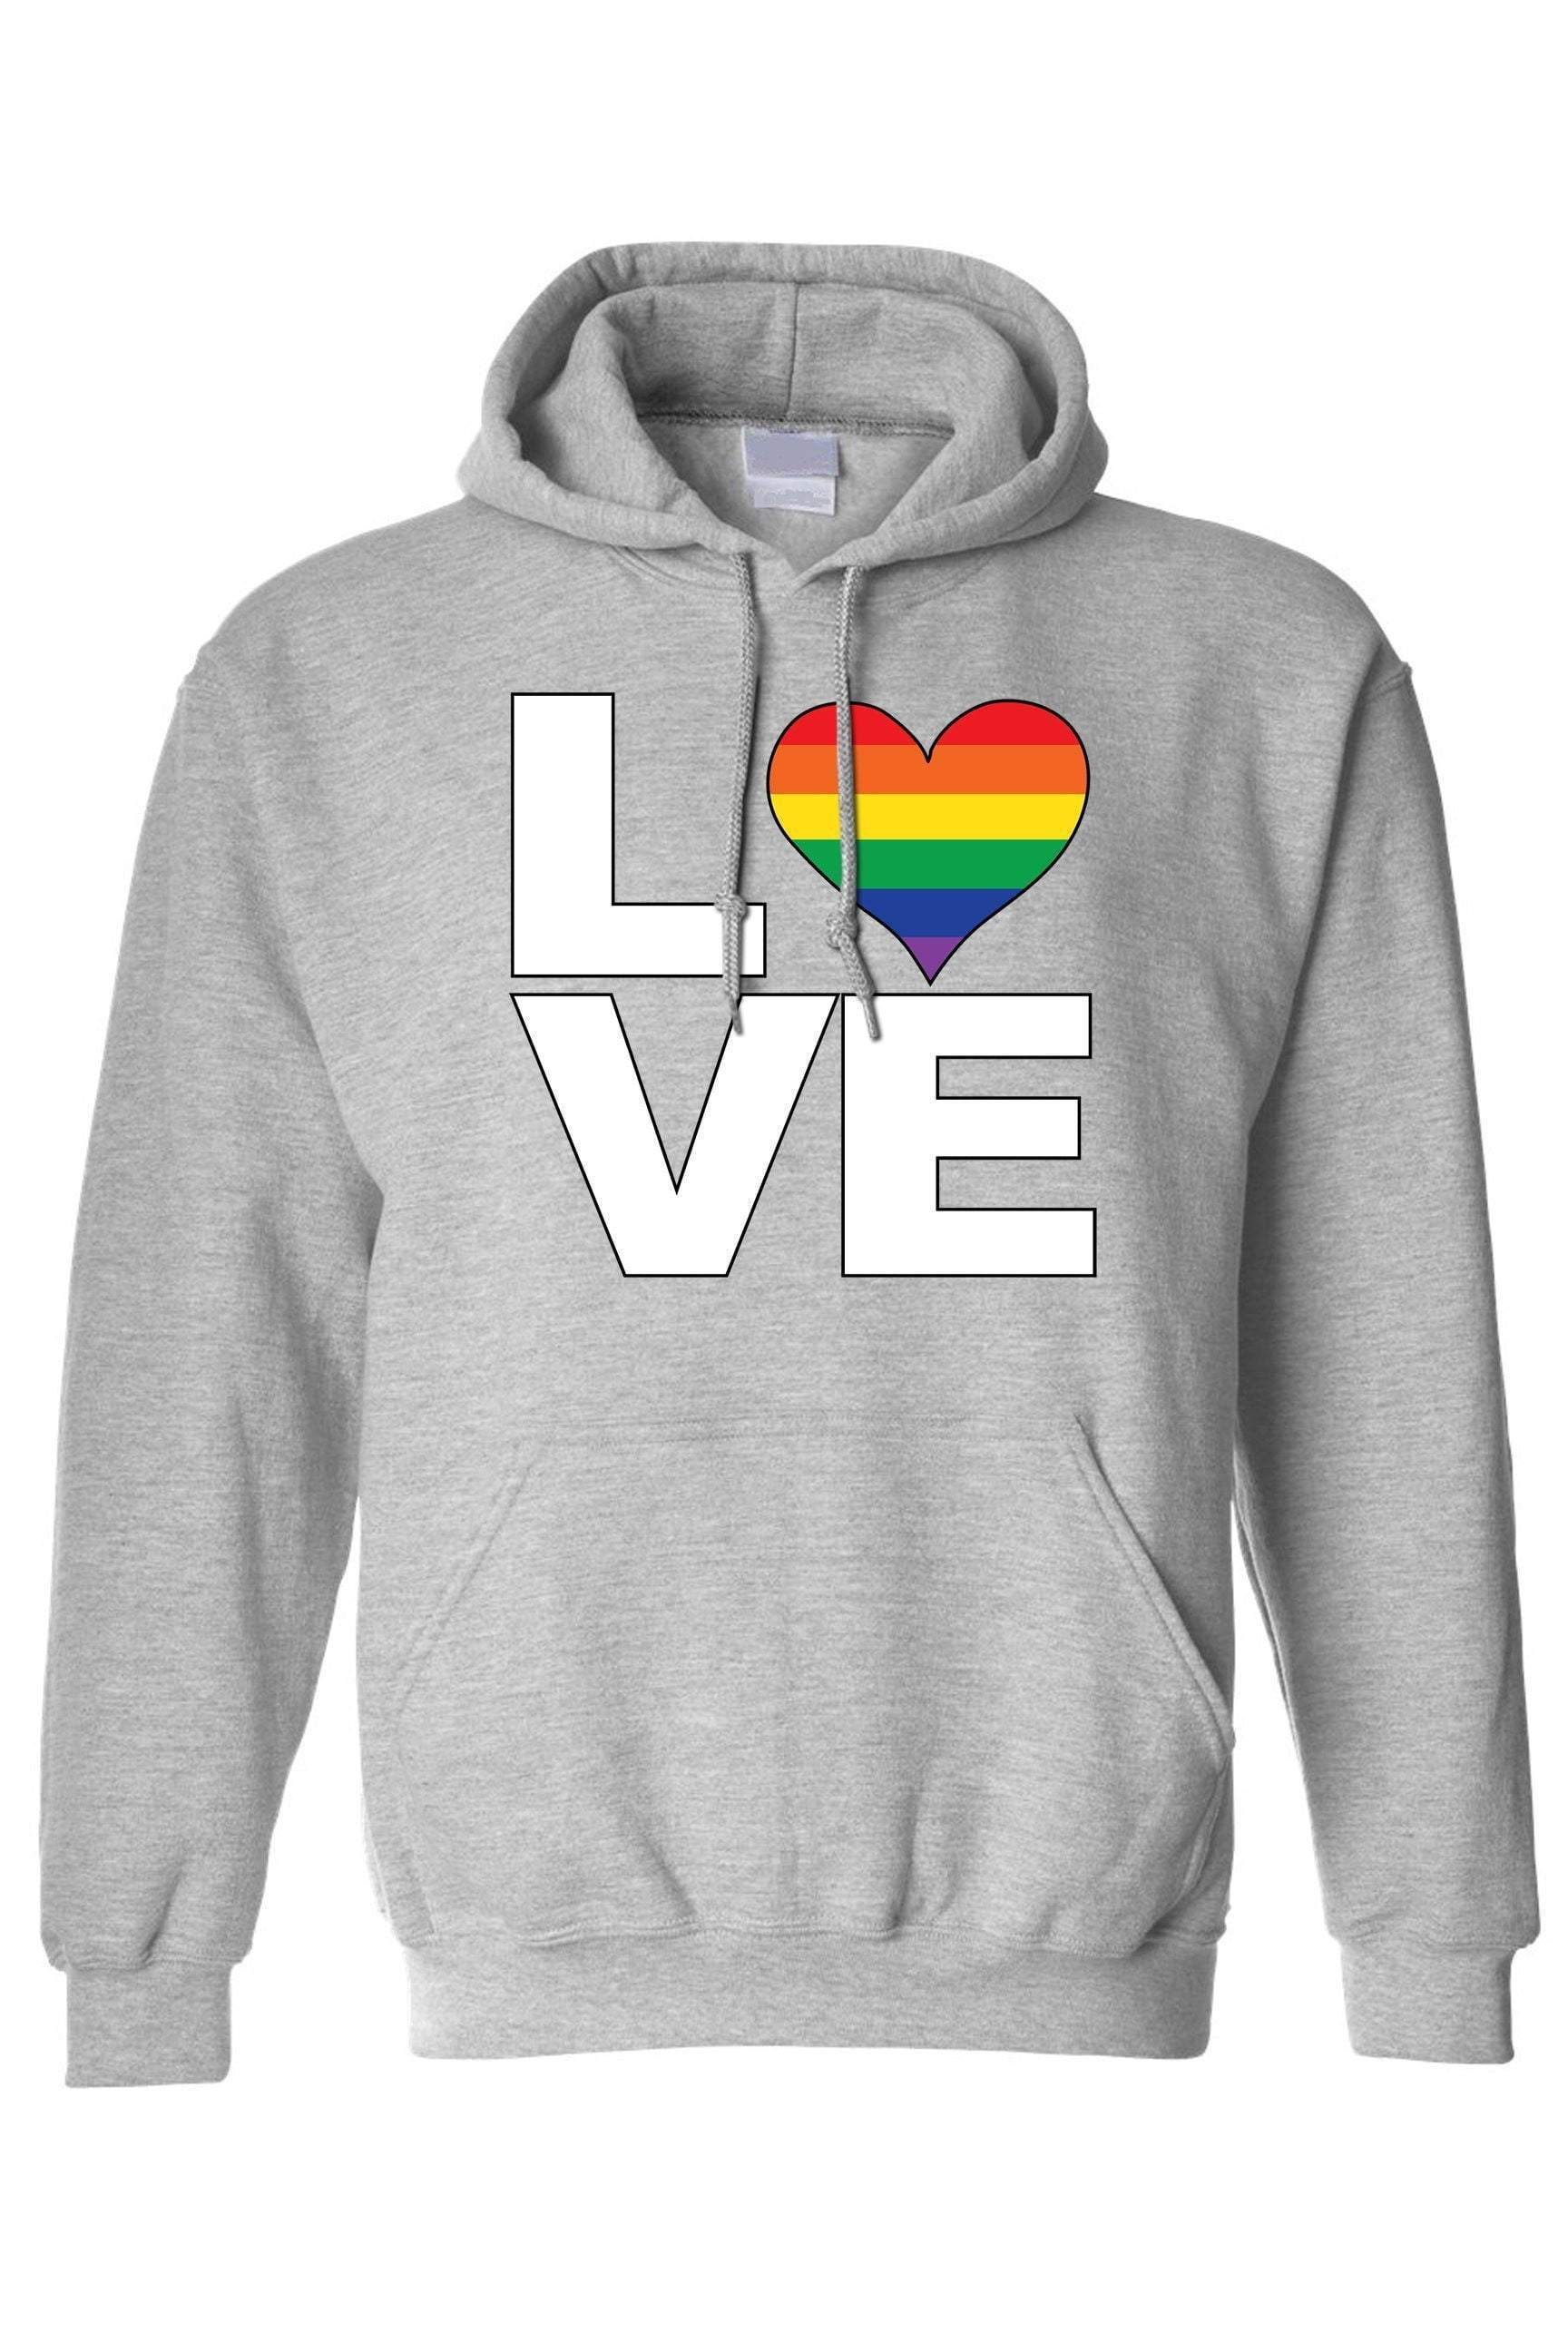 Unisex Pullover Hoodie LGBT "Rainbow Flag Gay love Pride!"